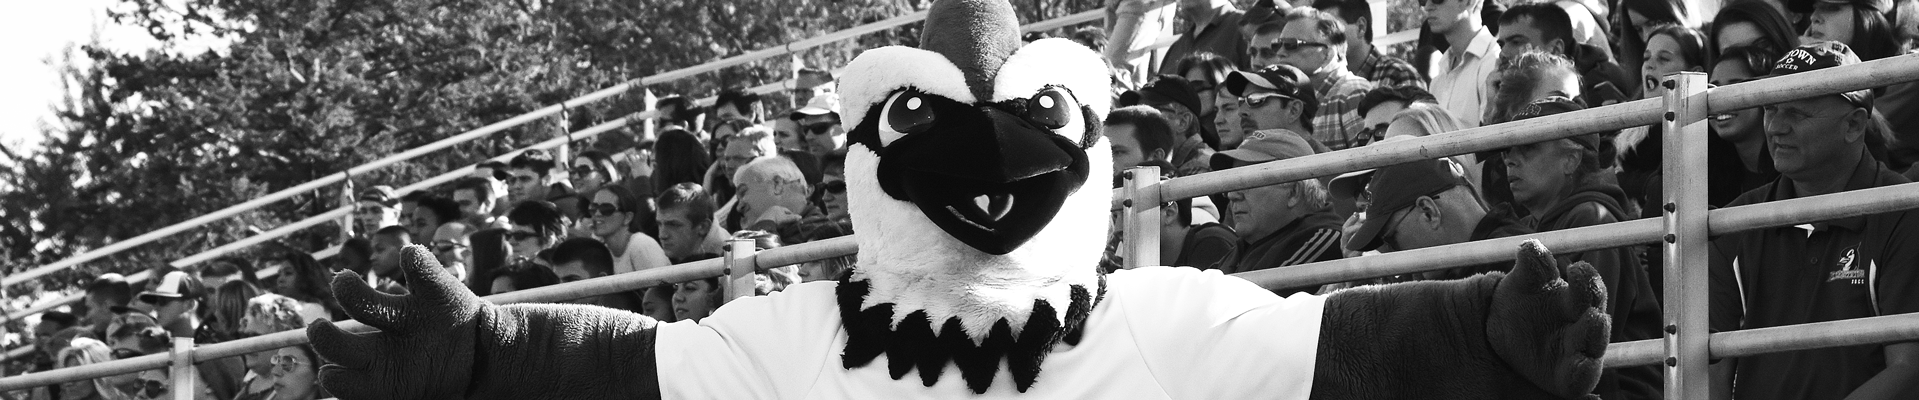 Blue Jay mascot at a game